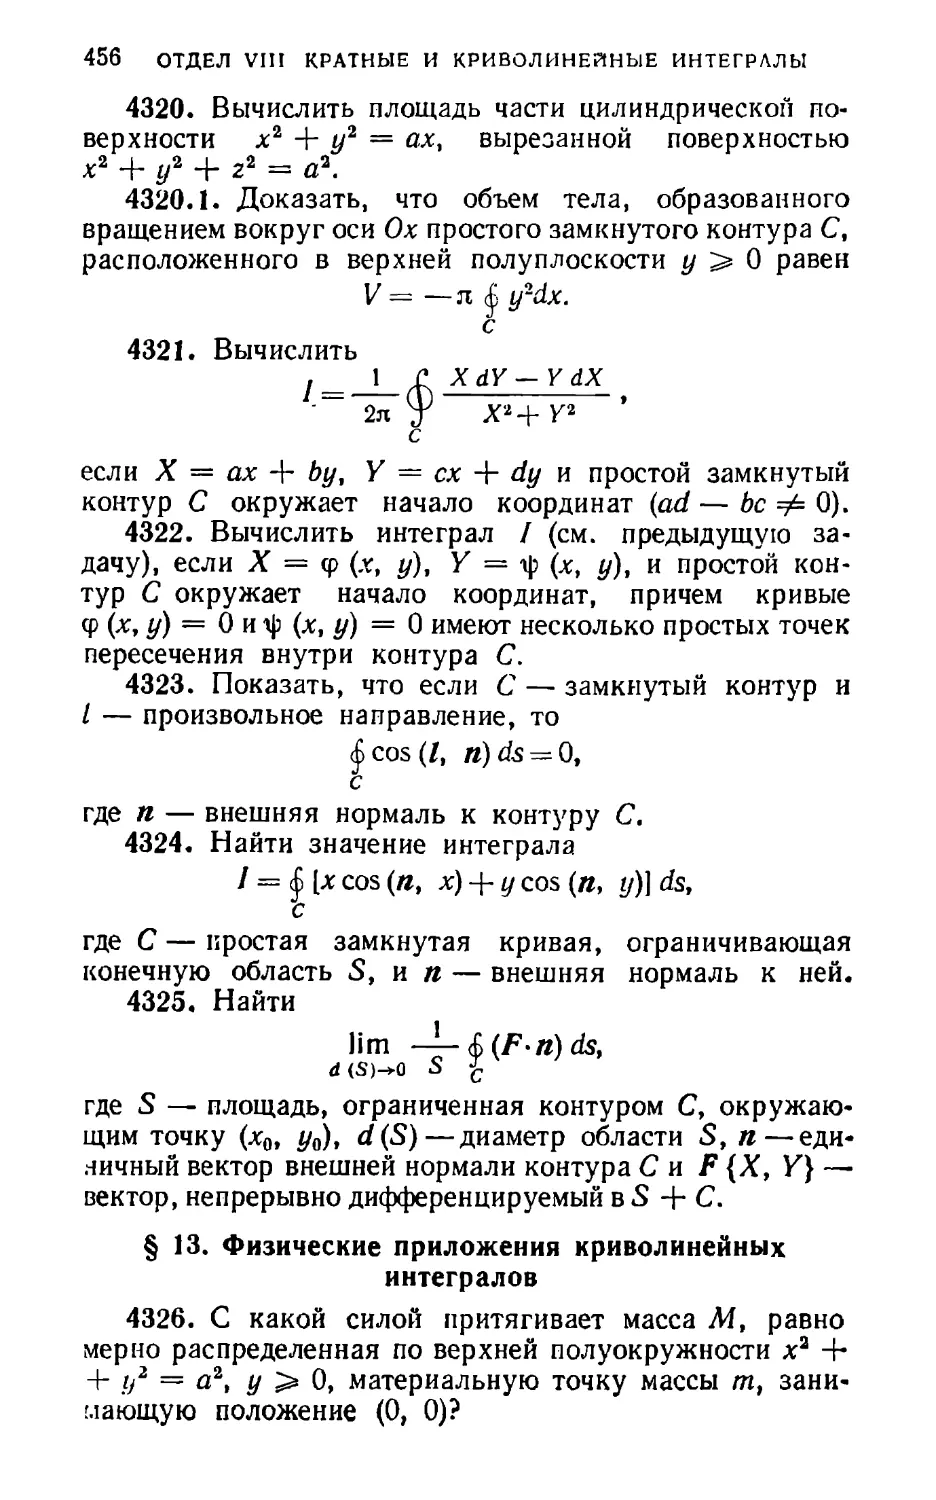 § 13. Физические приложения криволинейных интегралов